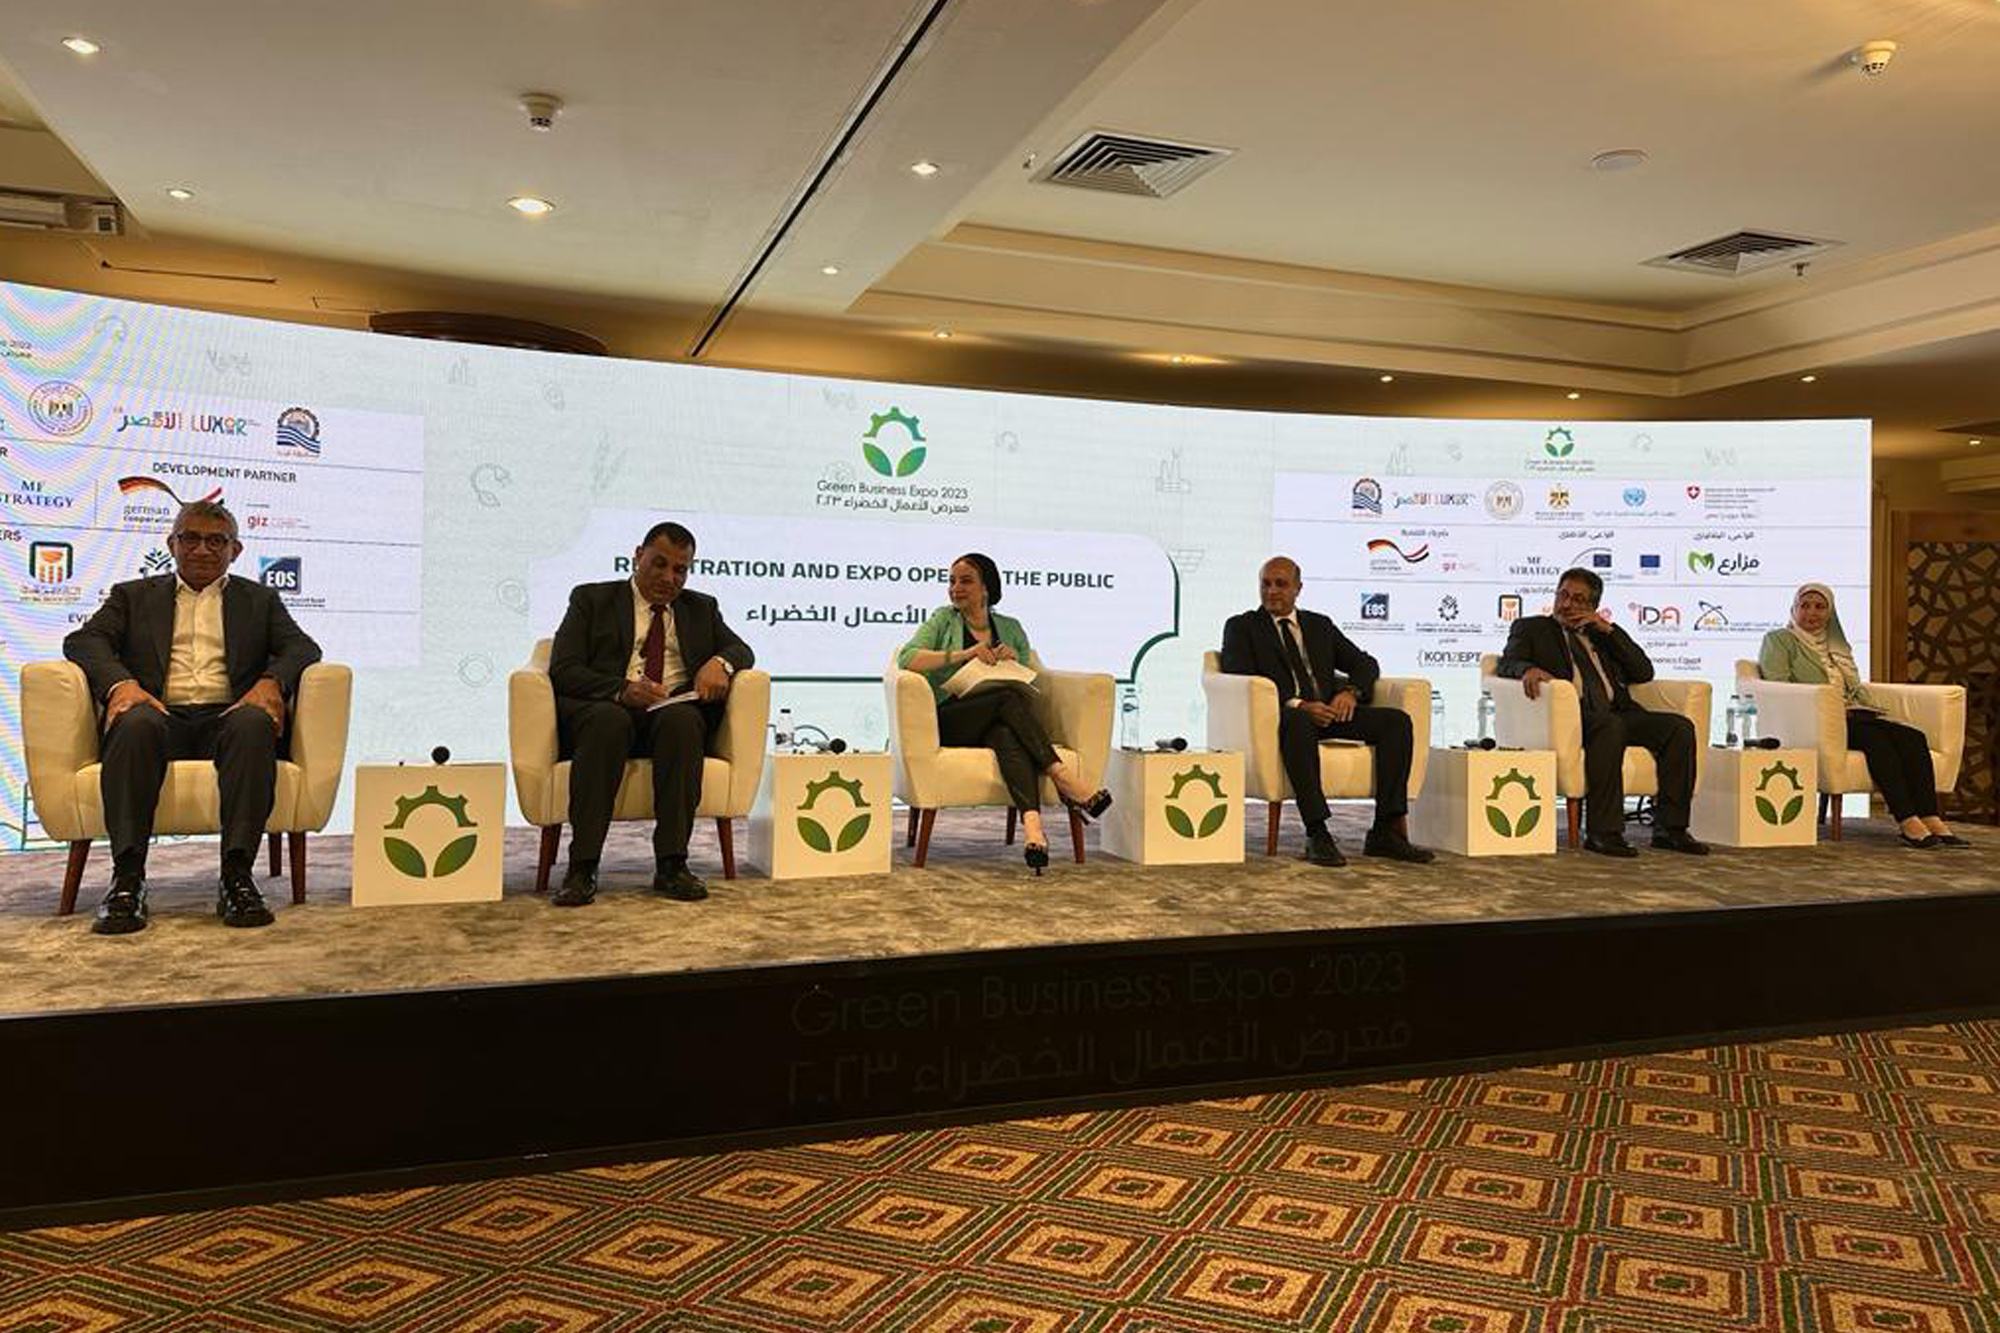 خلال مؤتمر معرض الأعمال الخضراء 2023 بالأقصر خلال الاحتفال بيوم البيئة العالمي.